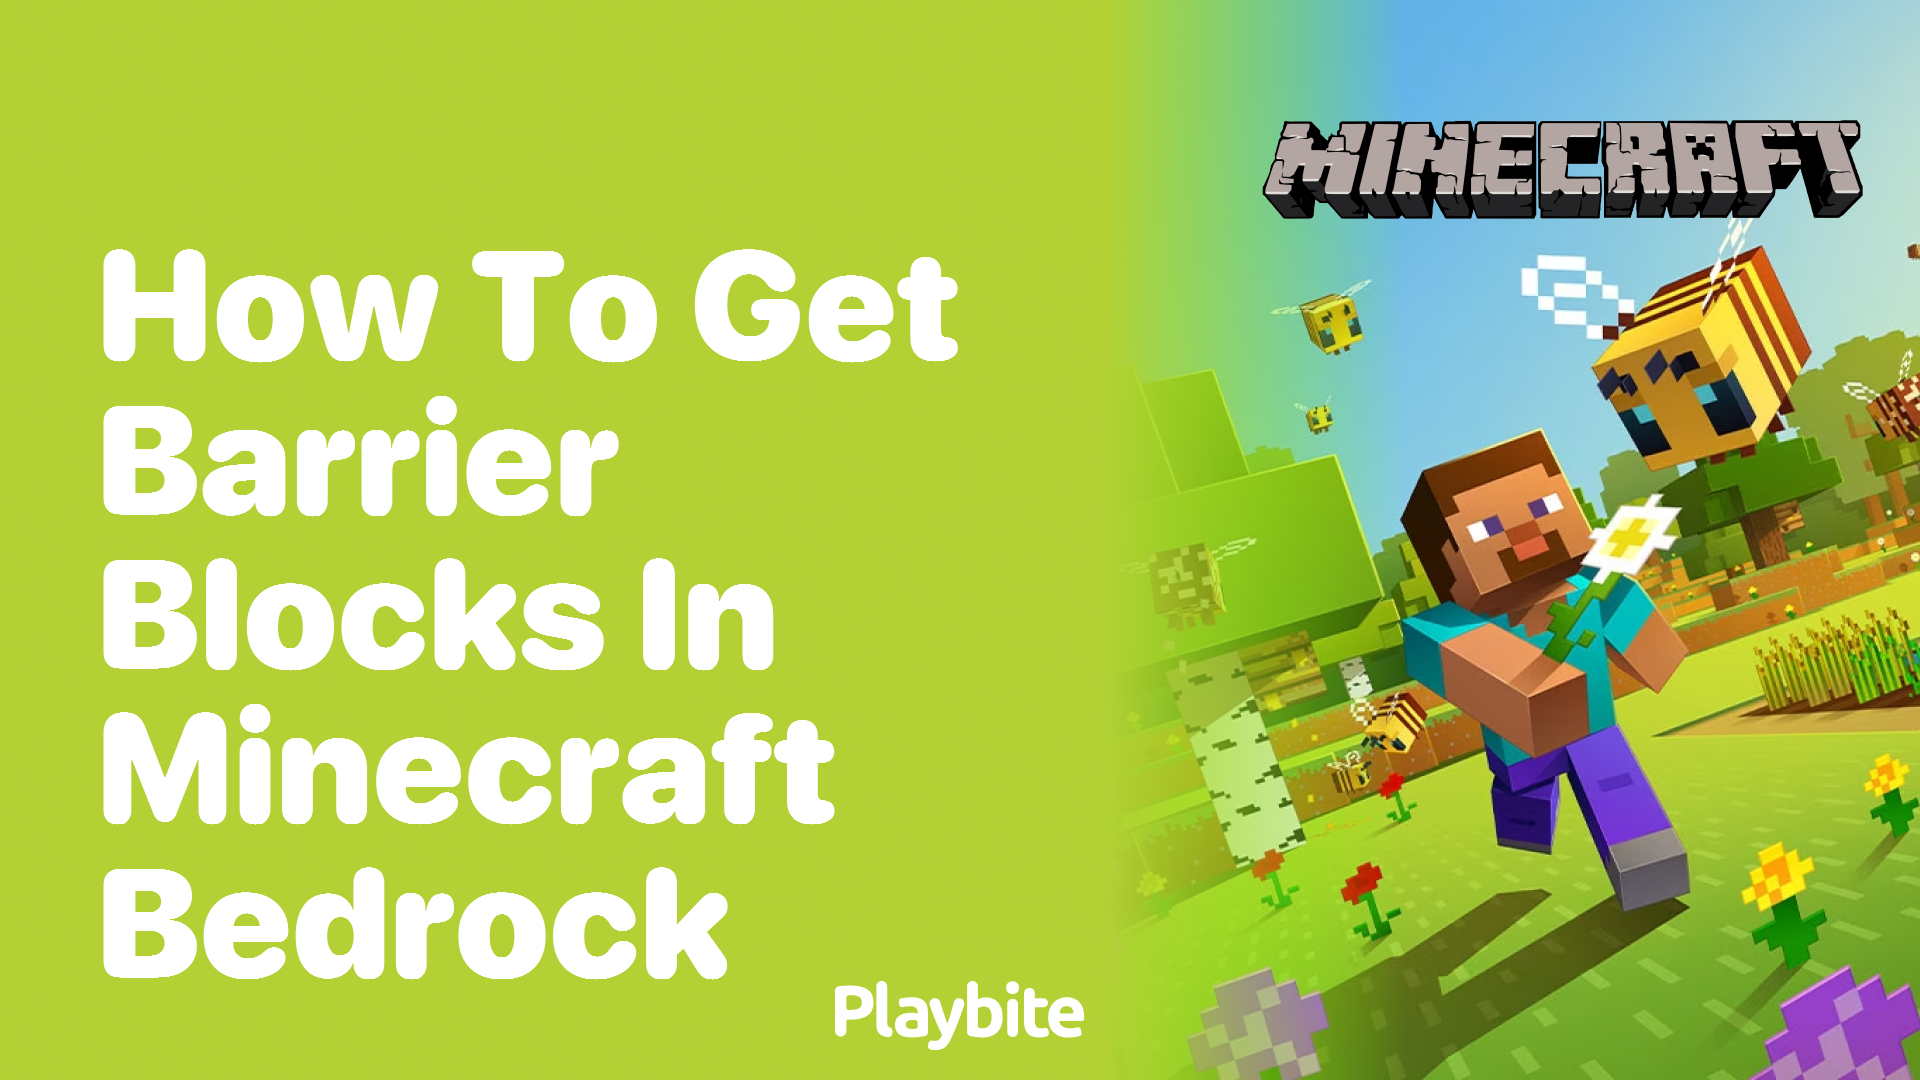 How to Get Barrier Blocks in Minecraft Bedrock